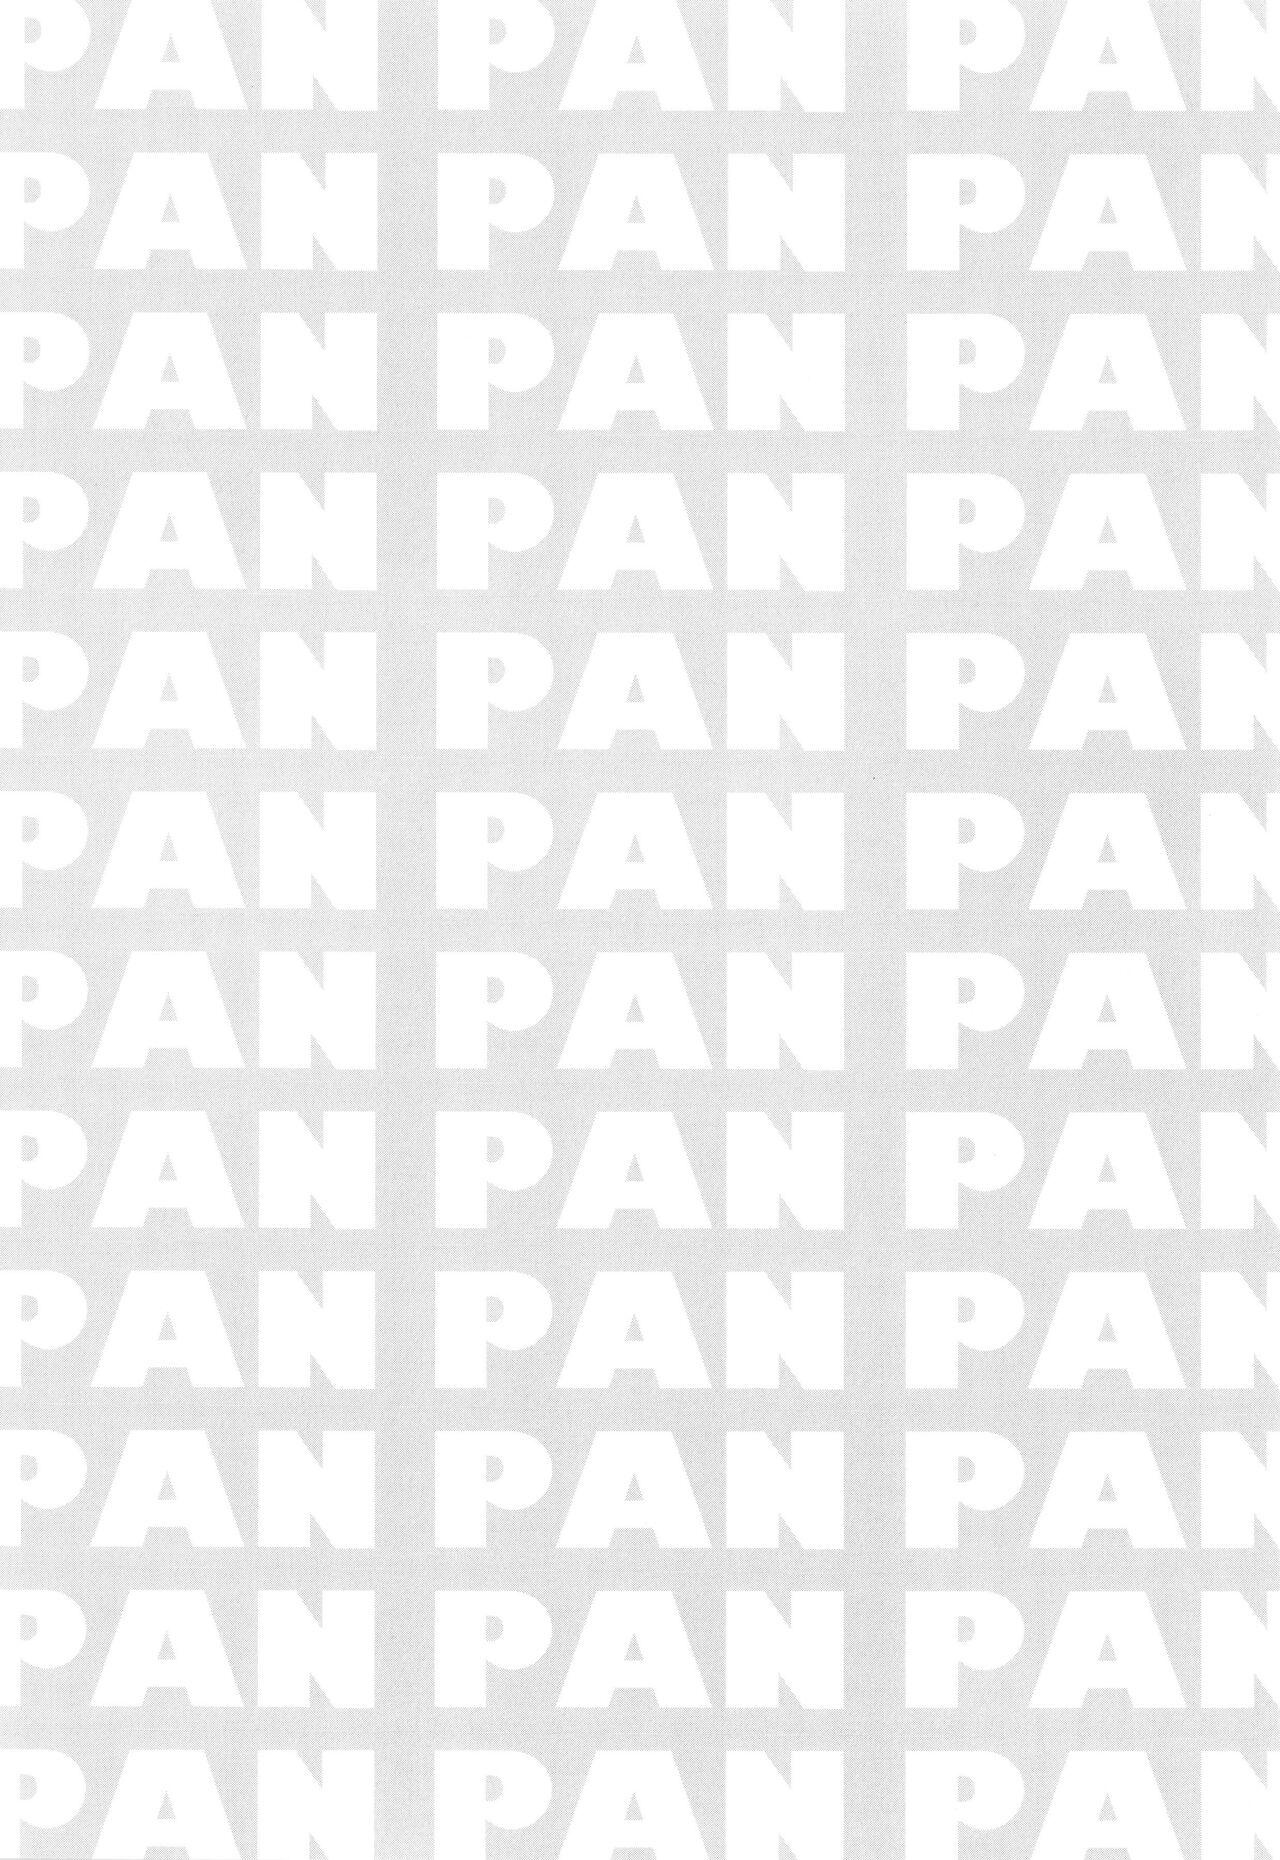 Muchi Niku Heaven de Pan Pan Pan 56